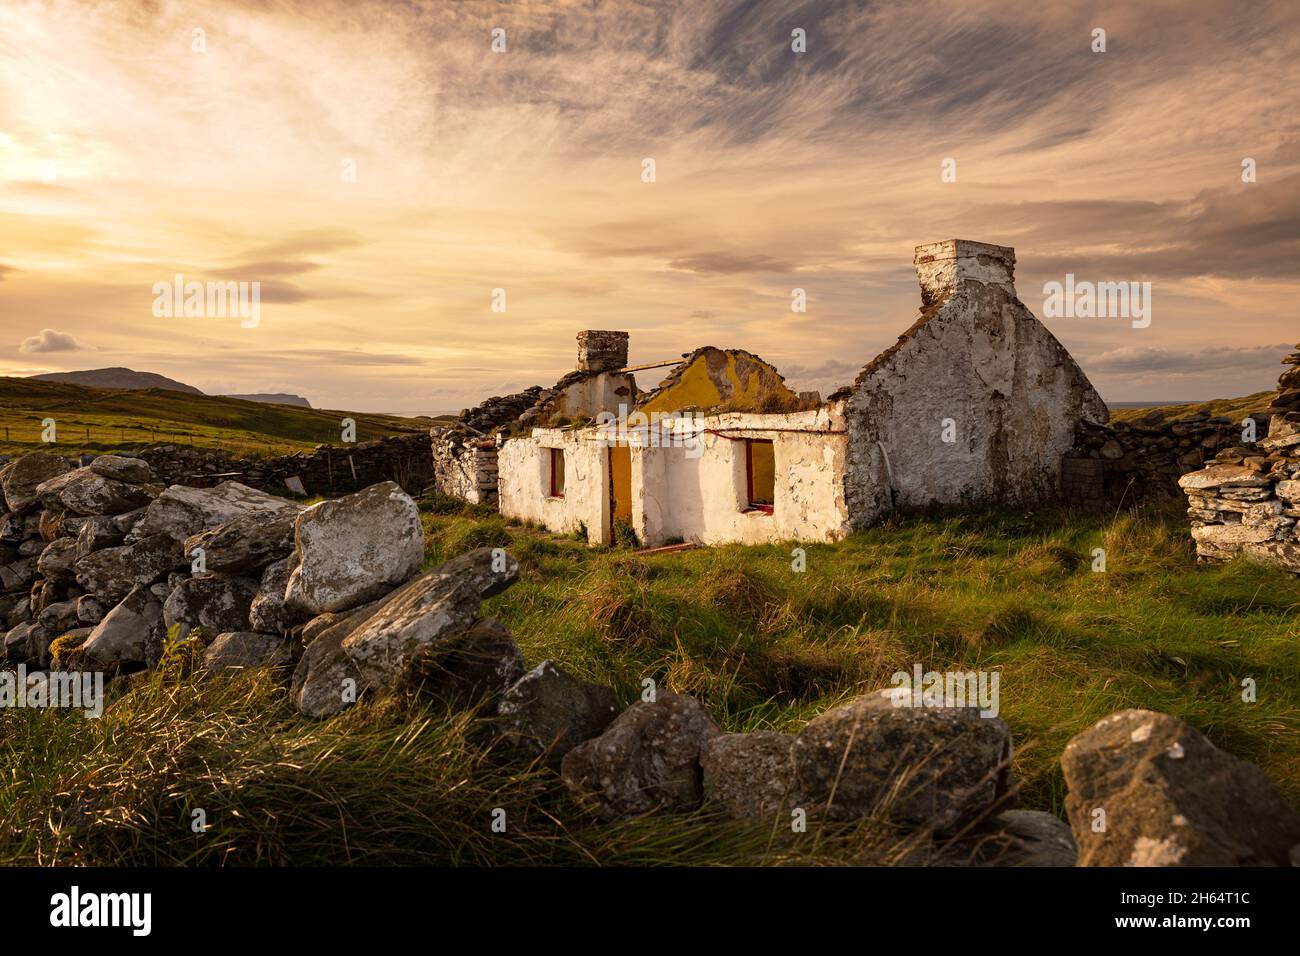 Ancien cottage rural abandonné situé sur l'île éloignée de Doagh, Co Donegal à l'ouest de l'Irlande. Banque D'Images